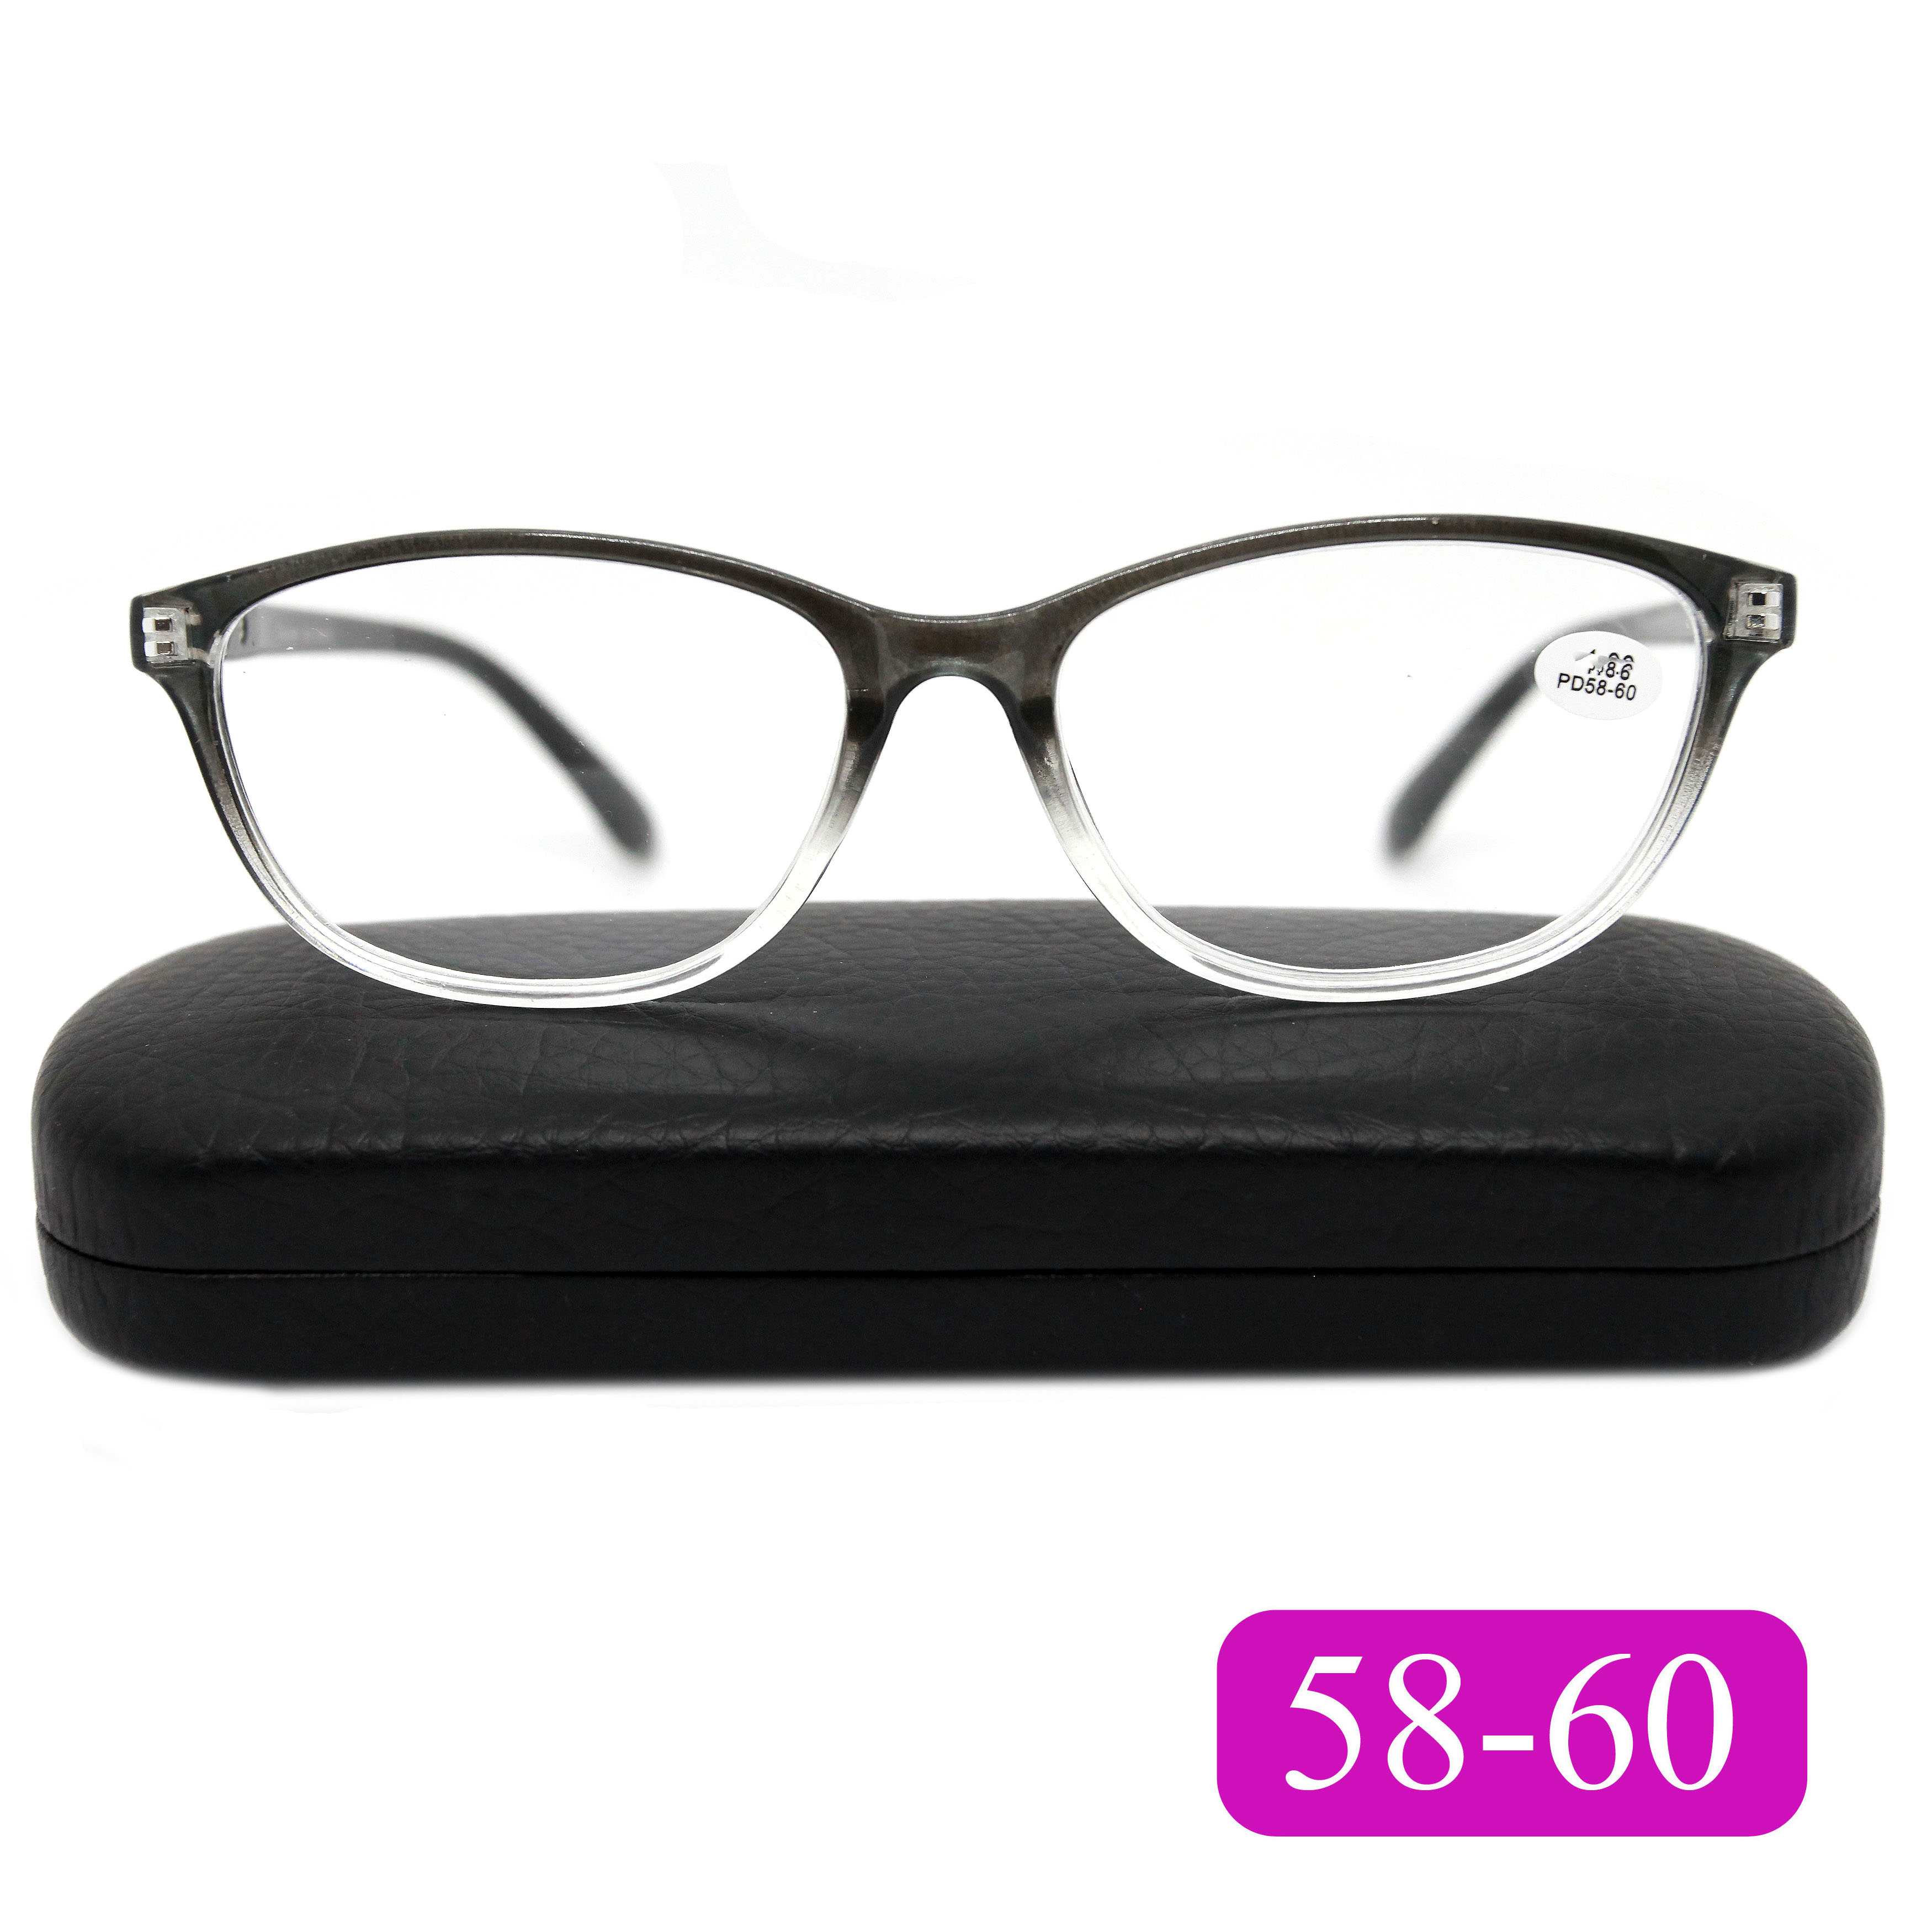 Готовые очки для чтения Traveler 7007 +0.75, c футляром, цвет серый, РЦ 58-60